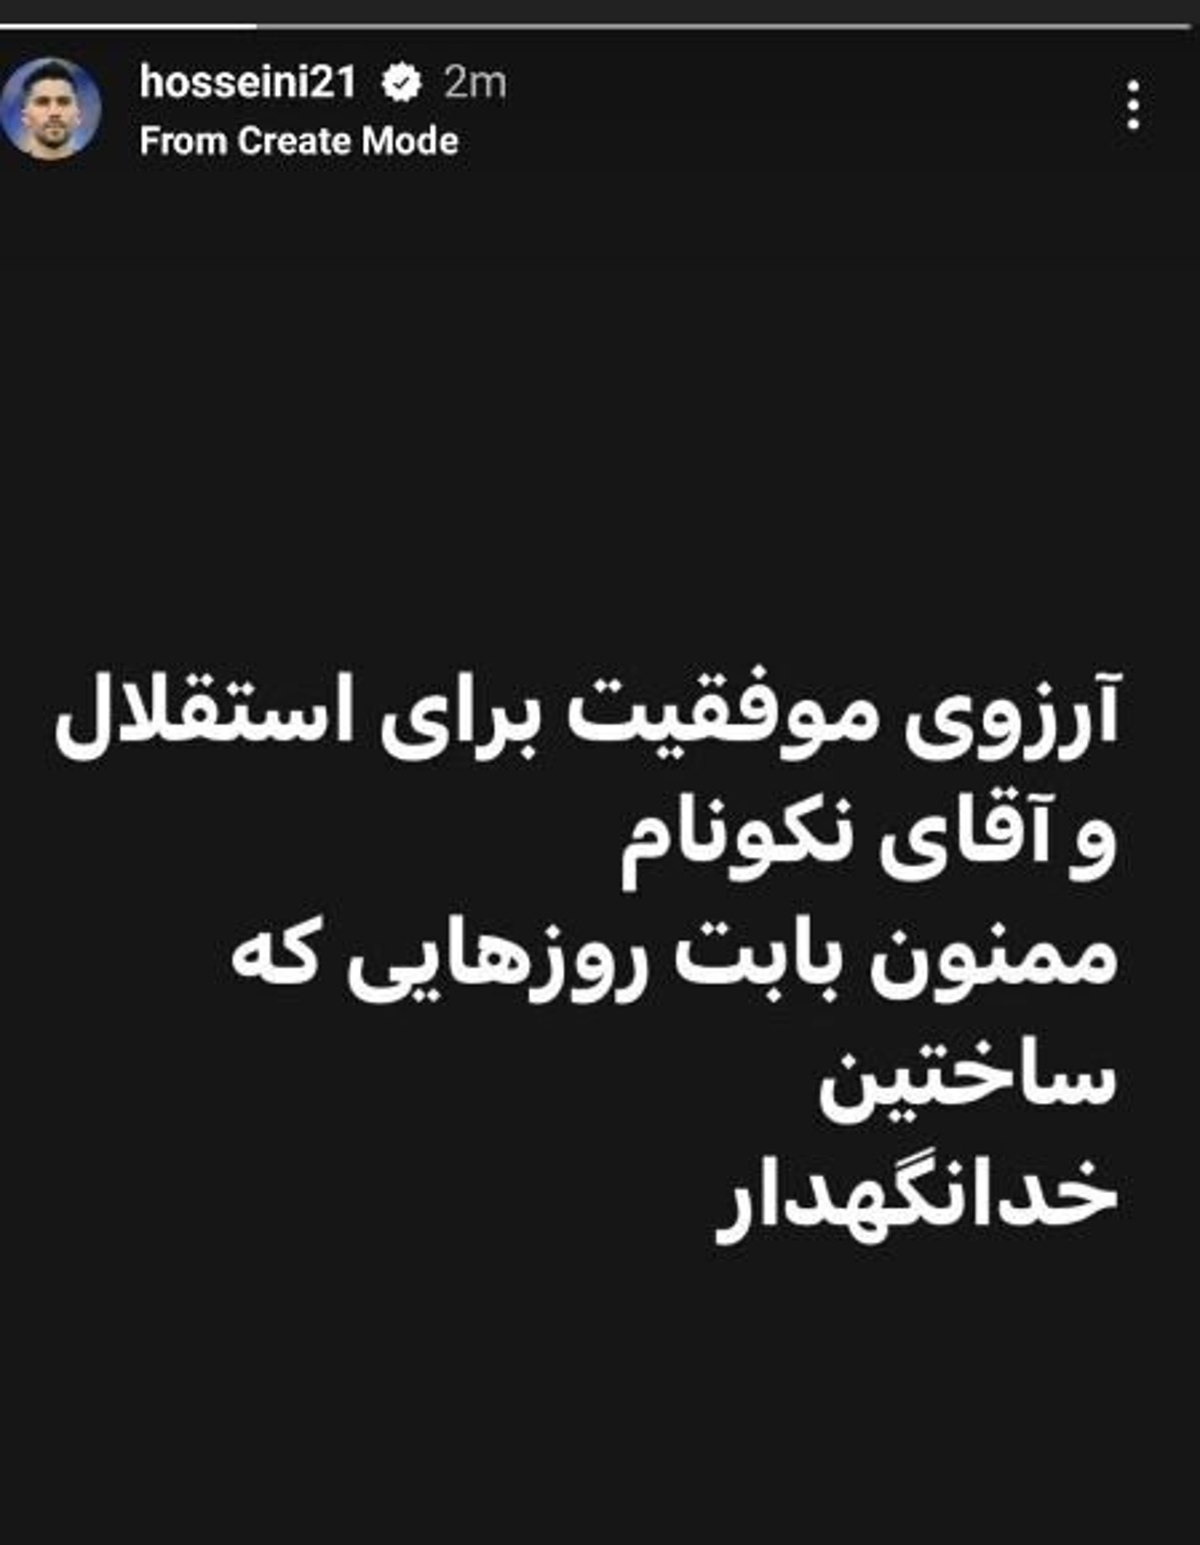 سیدحسین حسینی با استقلال و هوادارانش خداحافظی کرد